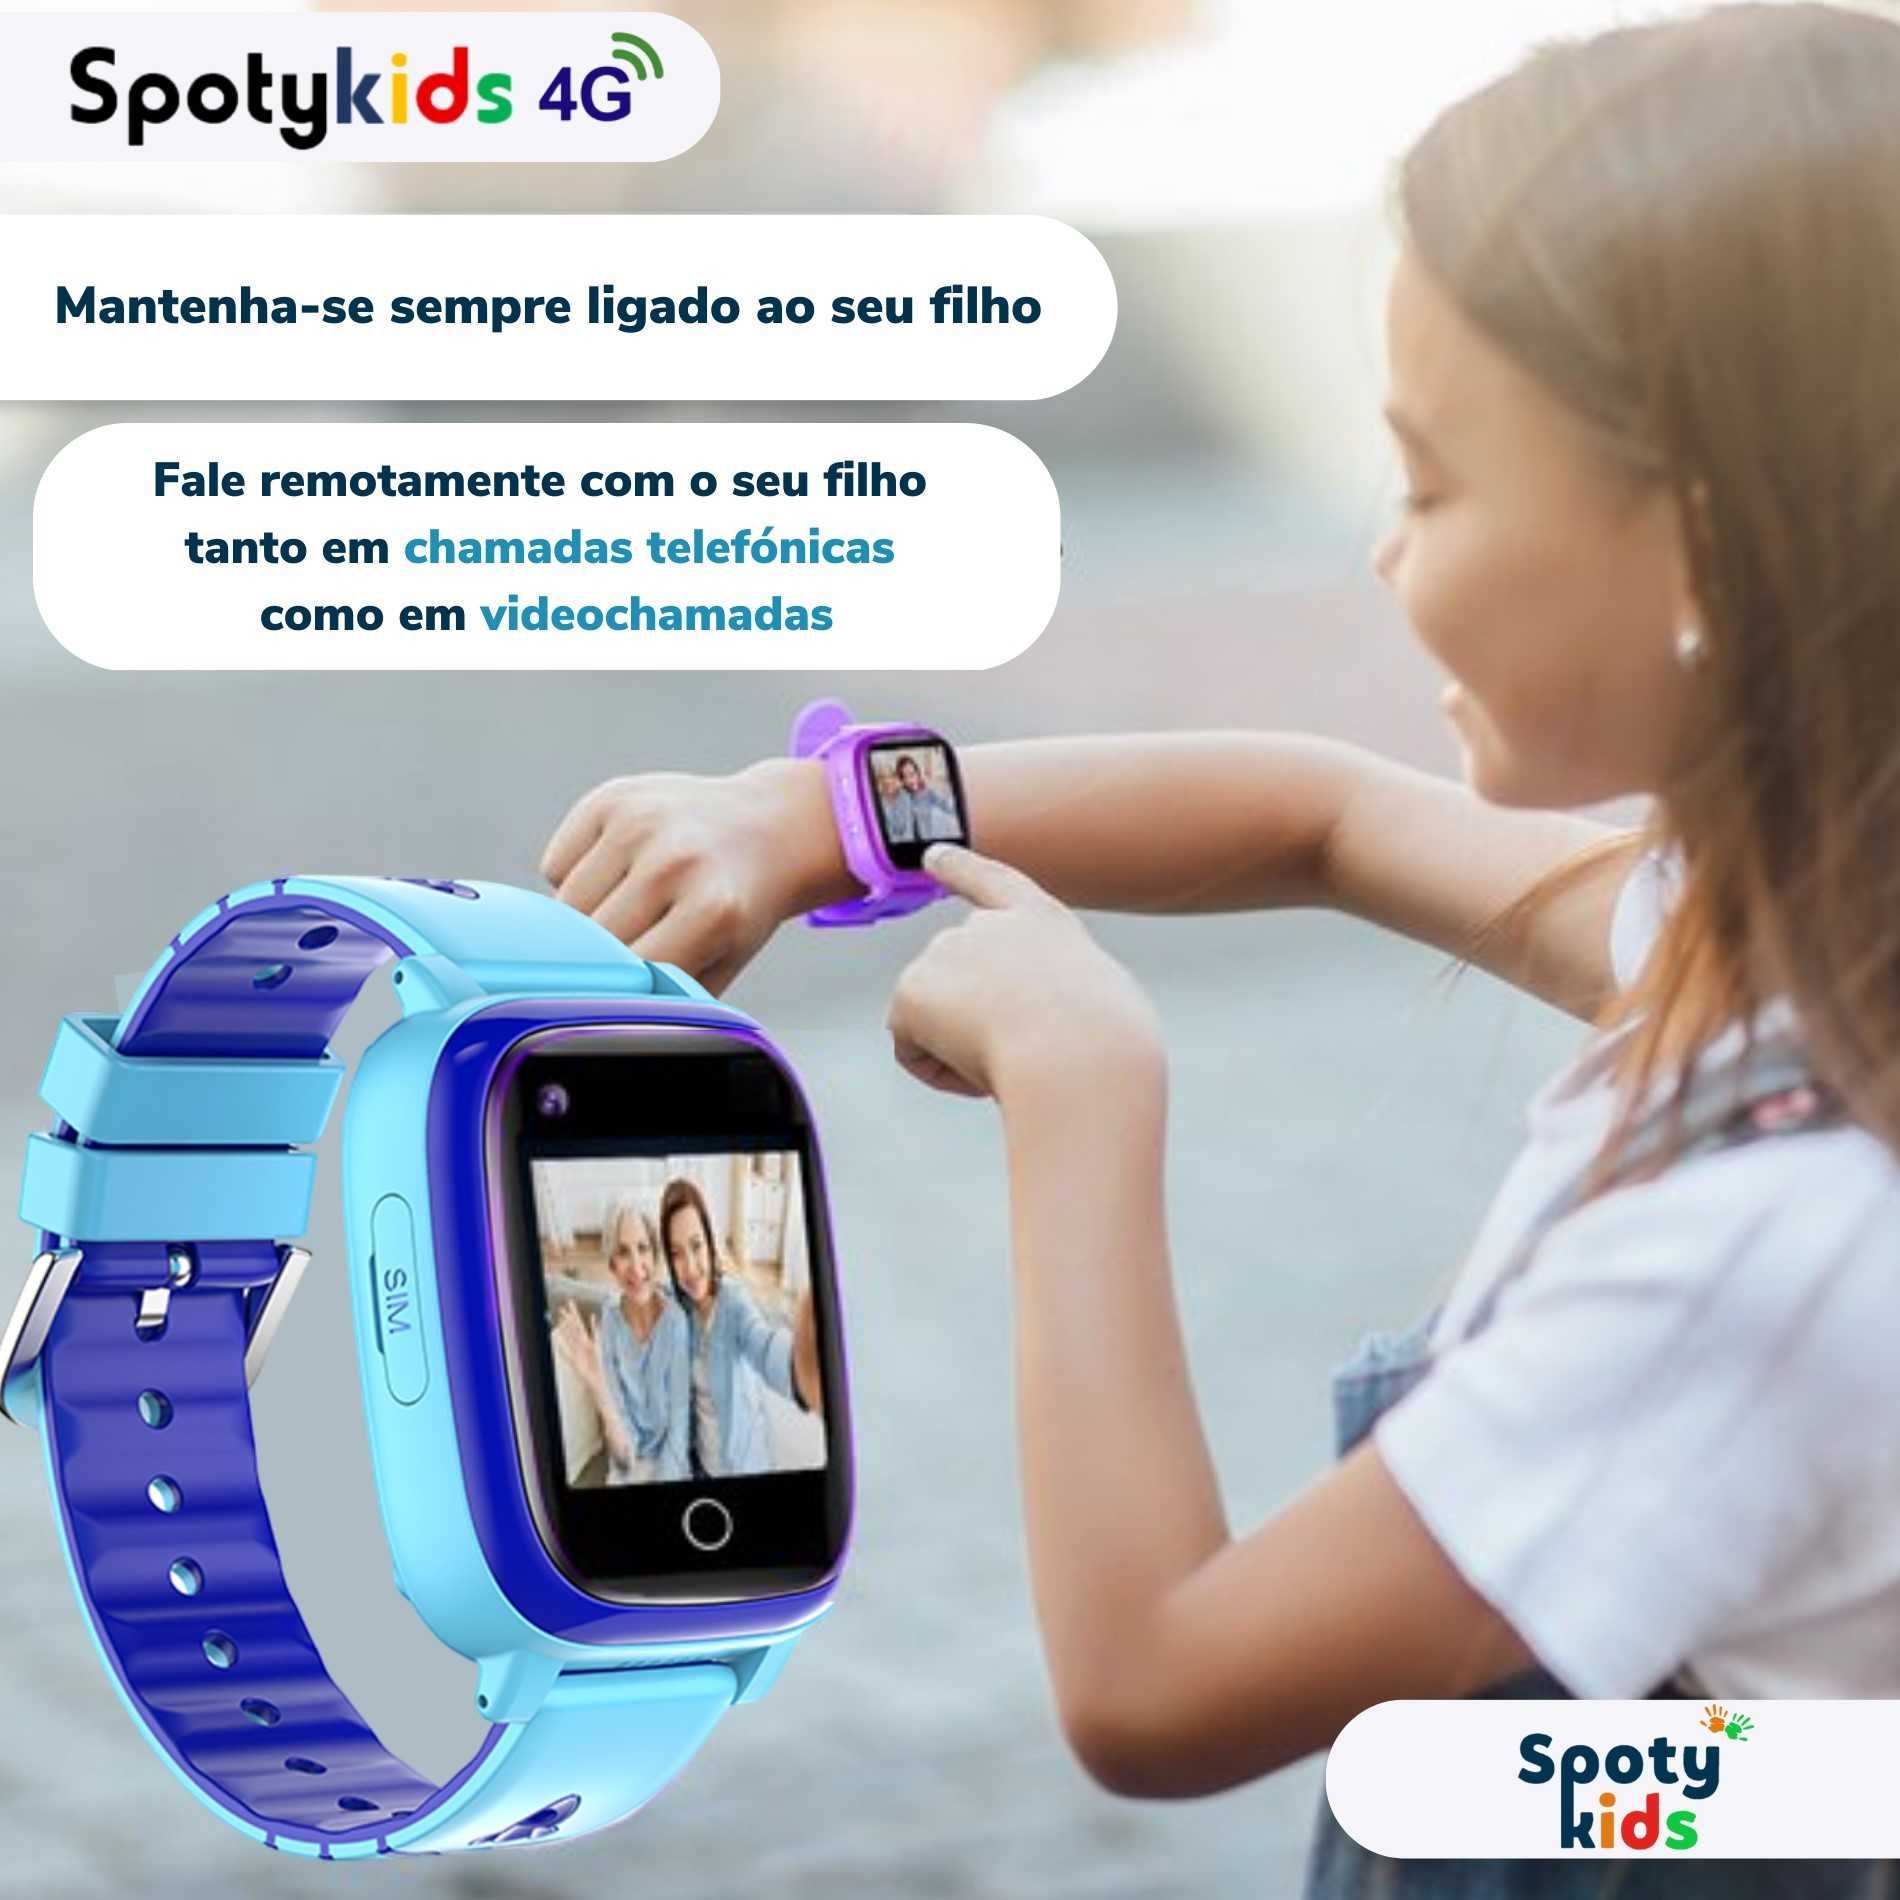 Relógio de crianças Smartwatch Spotykids 4G GPS, Videochamada e Jogos